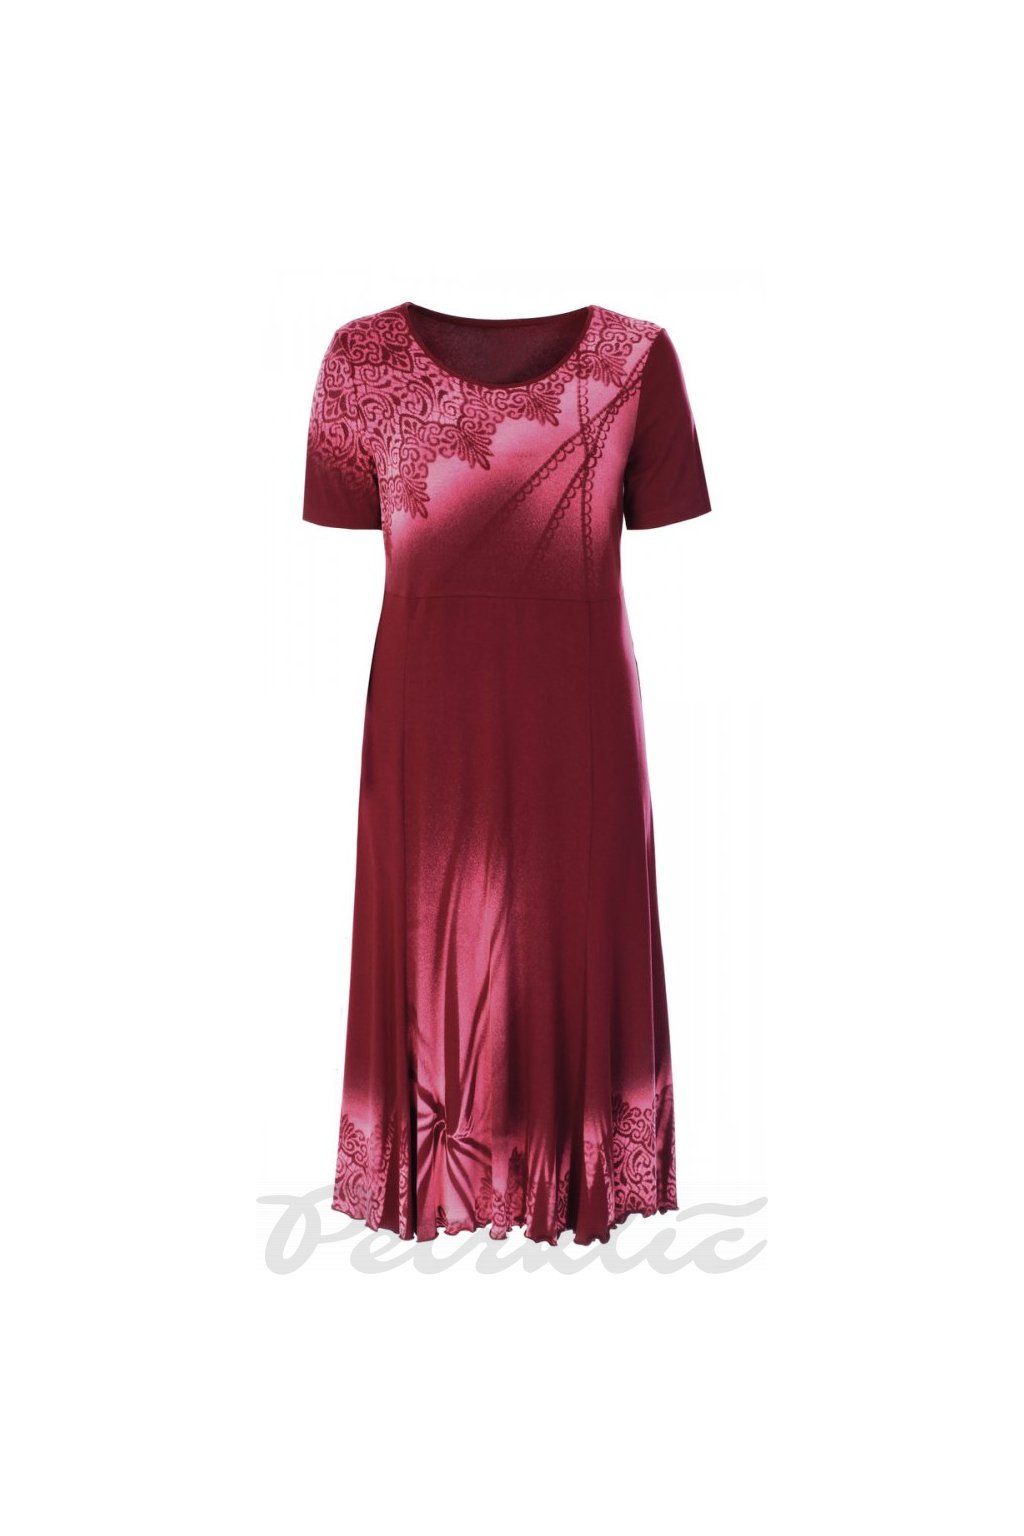 MARYLA - šaty krátký rukáv 130 - 135 cm